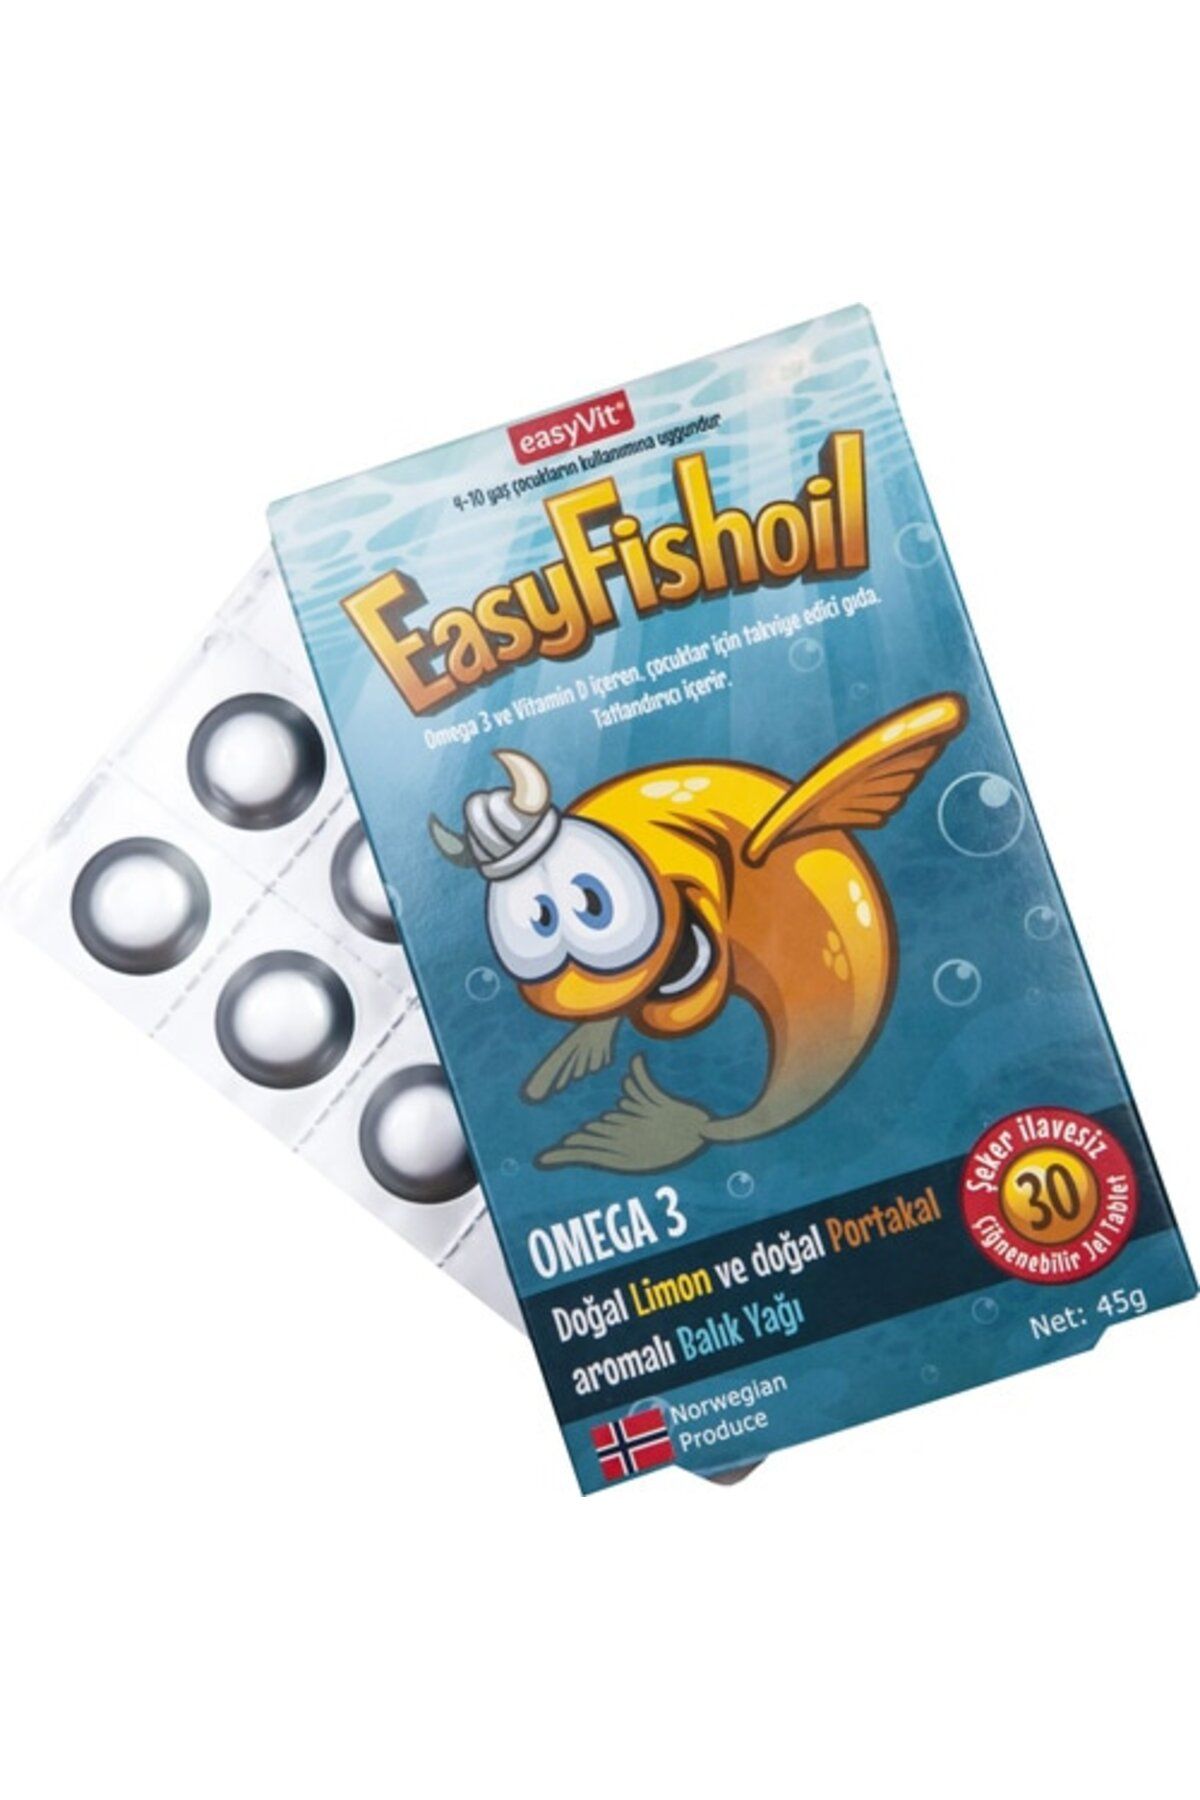 Easy Fishoil Easyfishoil Omega 3 Çiğnenebilir 30 Adet Jel